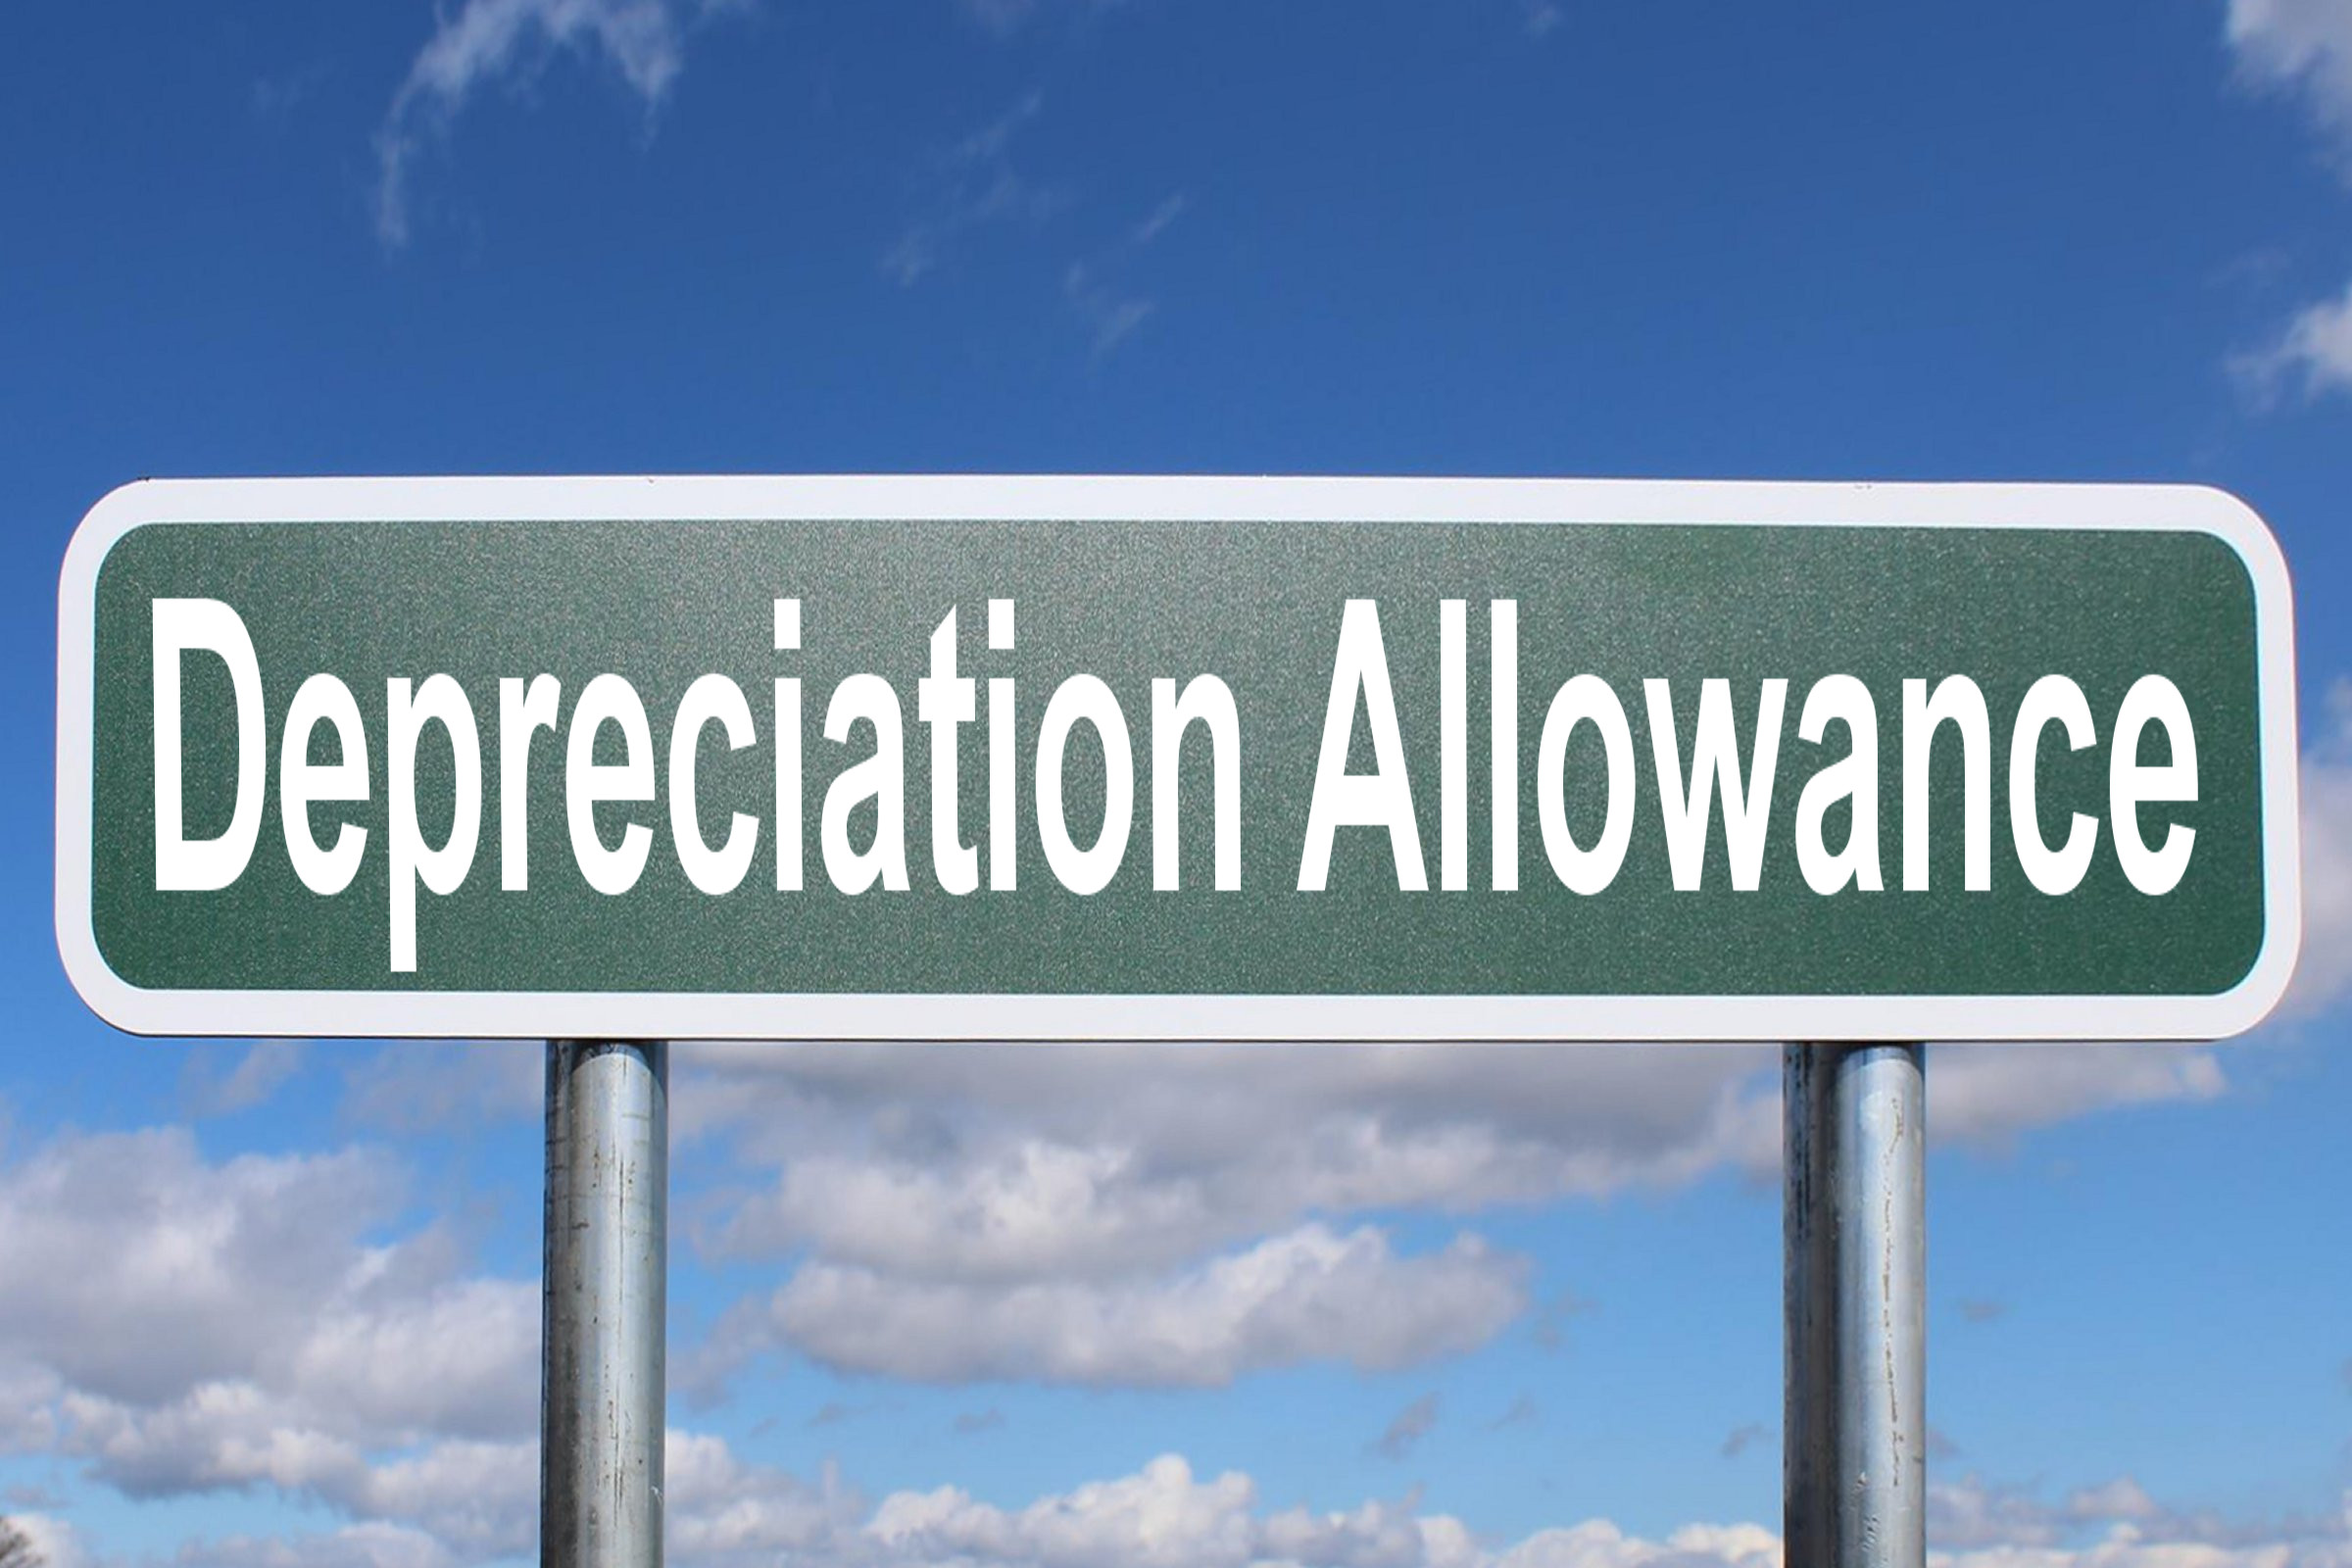 depreciation allowance